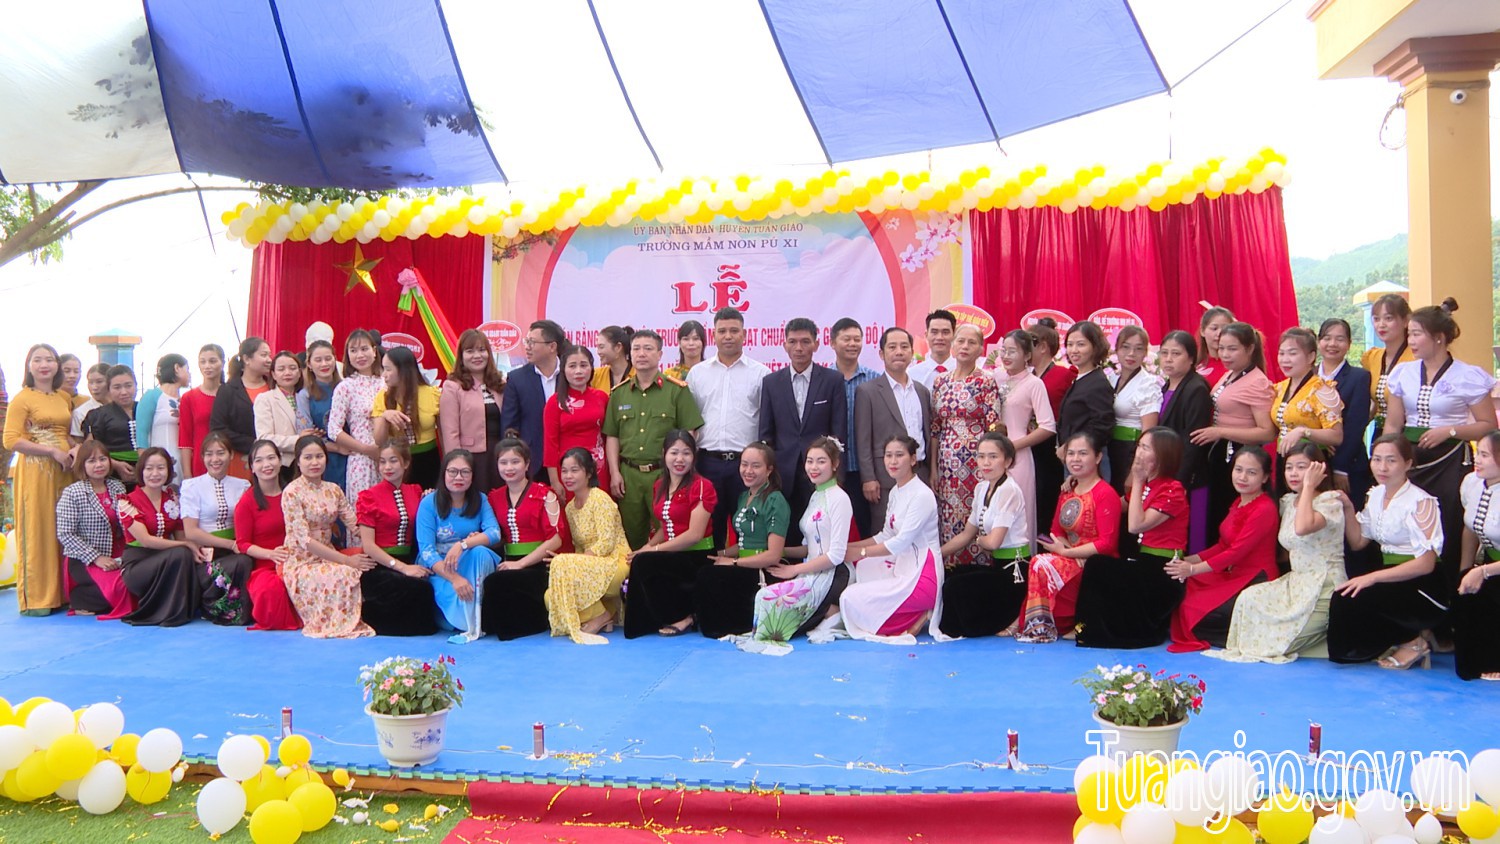 Trường Mầm non Pú xi tổ chức lễ đón bằng công nhận trường Mầm non đạt chuẩn quốc gia mức độ 1 và kỷ niệm 41 năm ngày nhà giáo Việt Nam 20/11